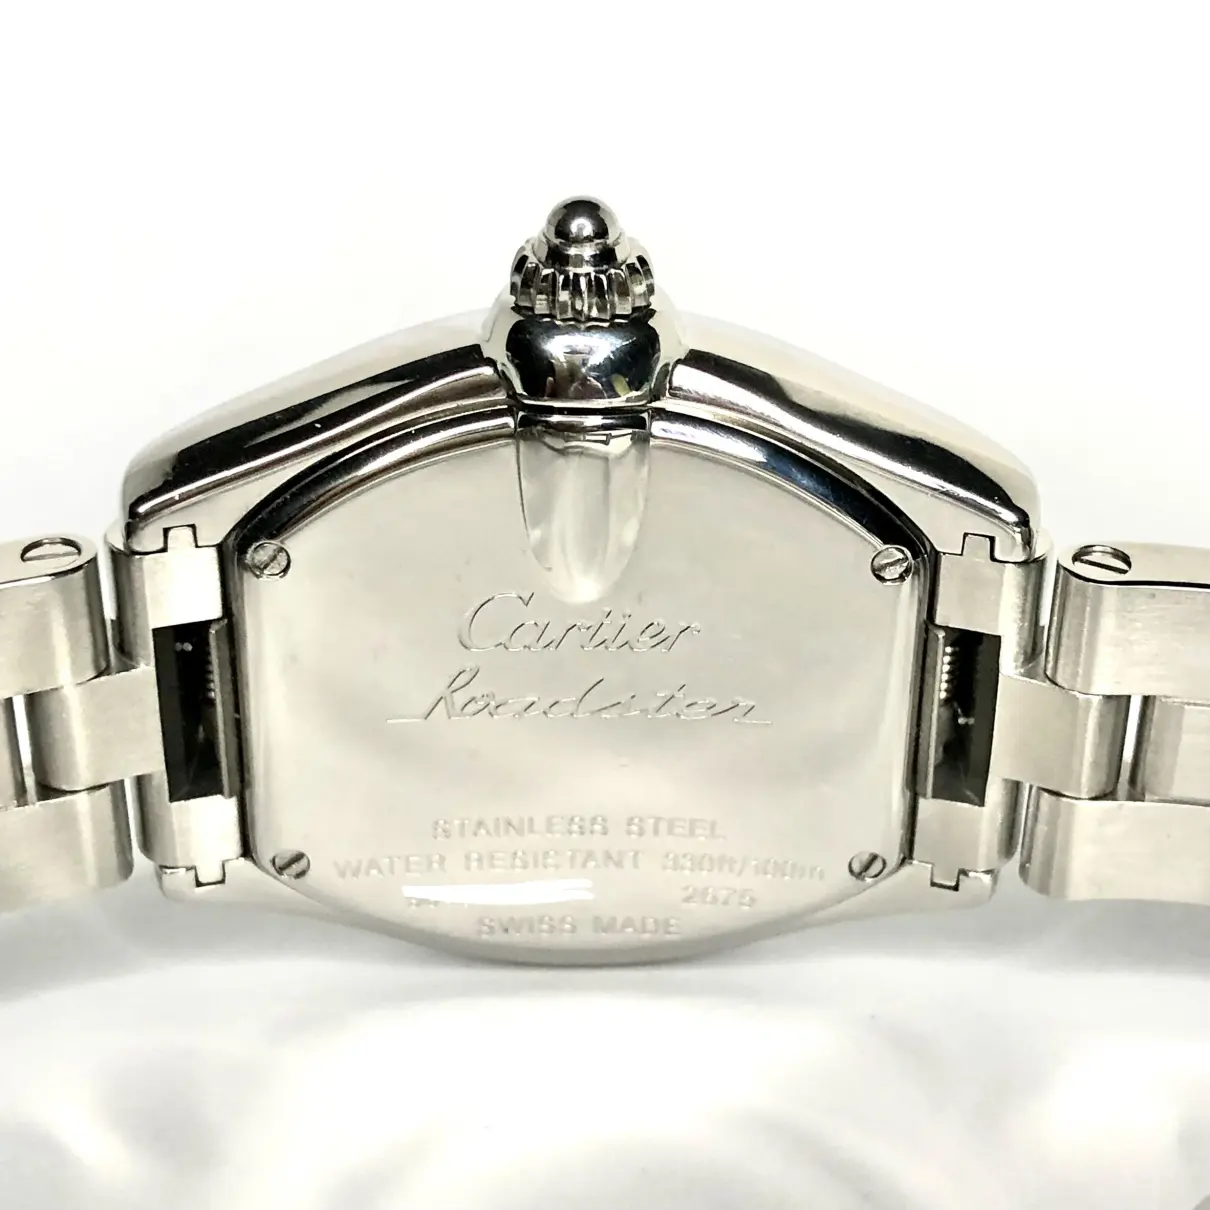 Buy Cartier Roadster watch online